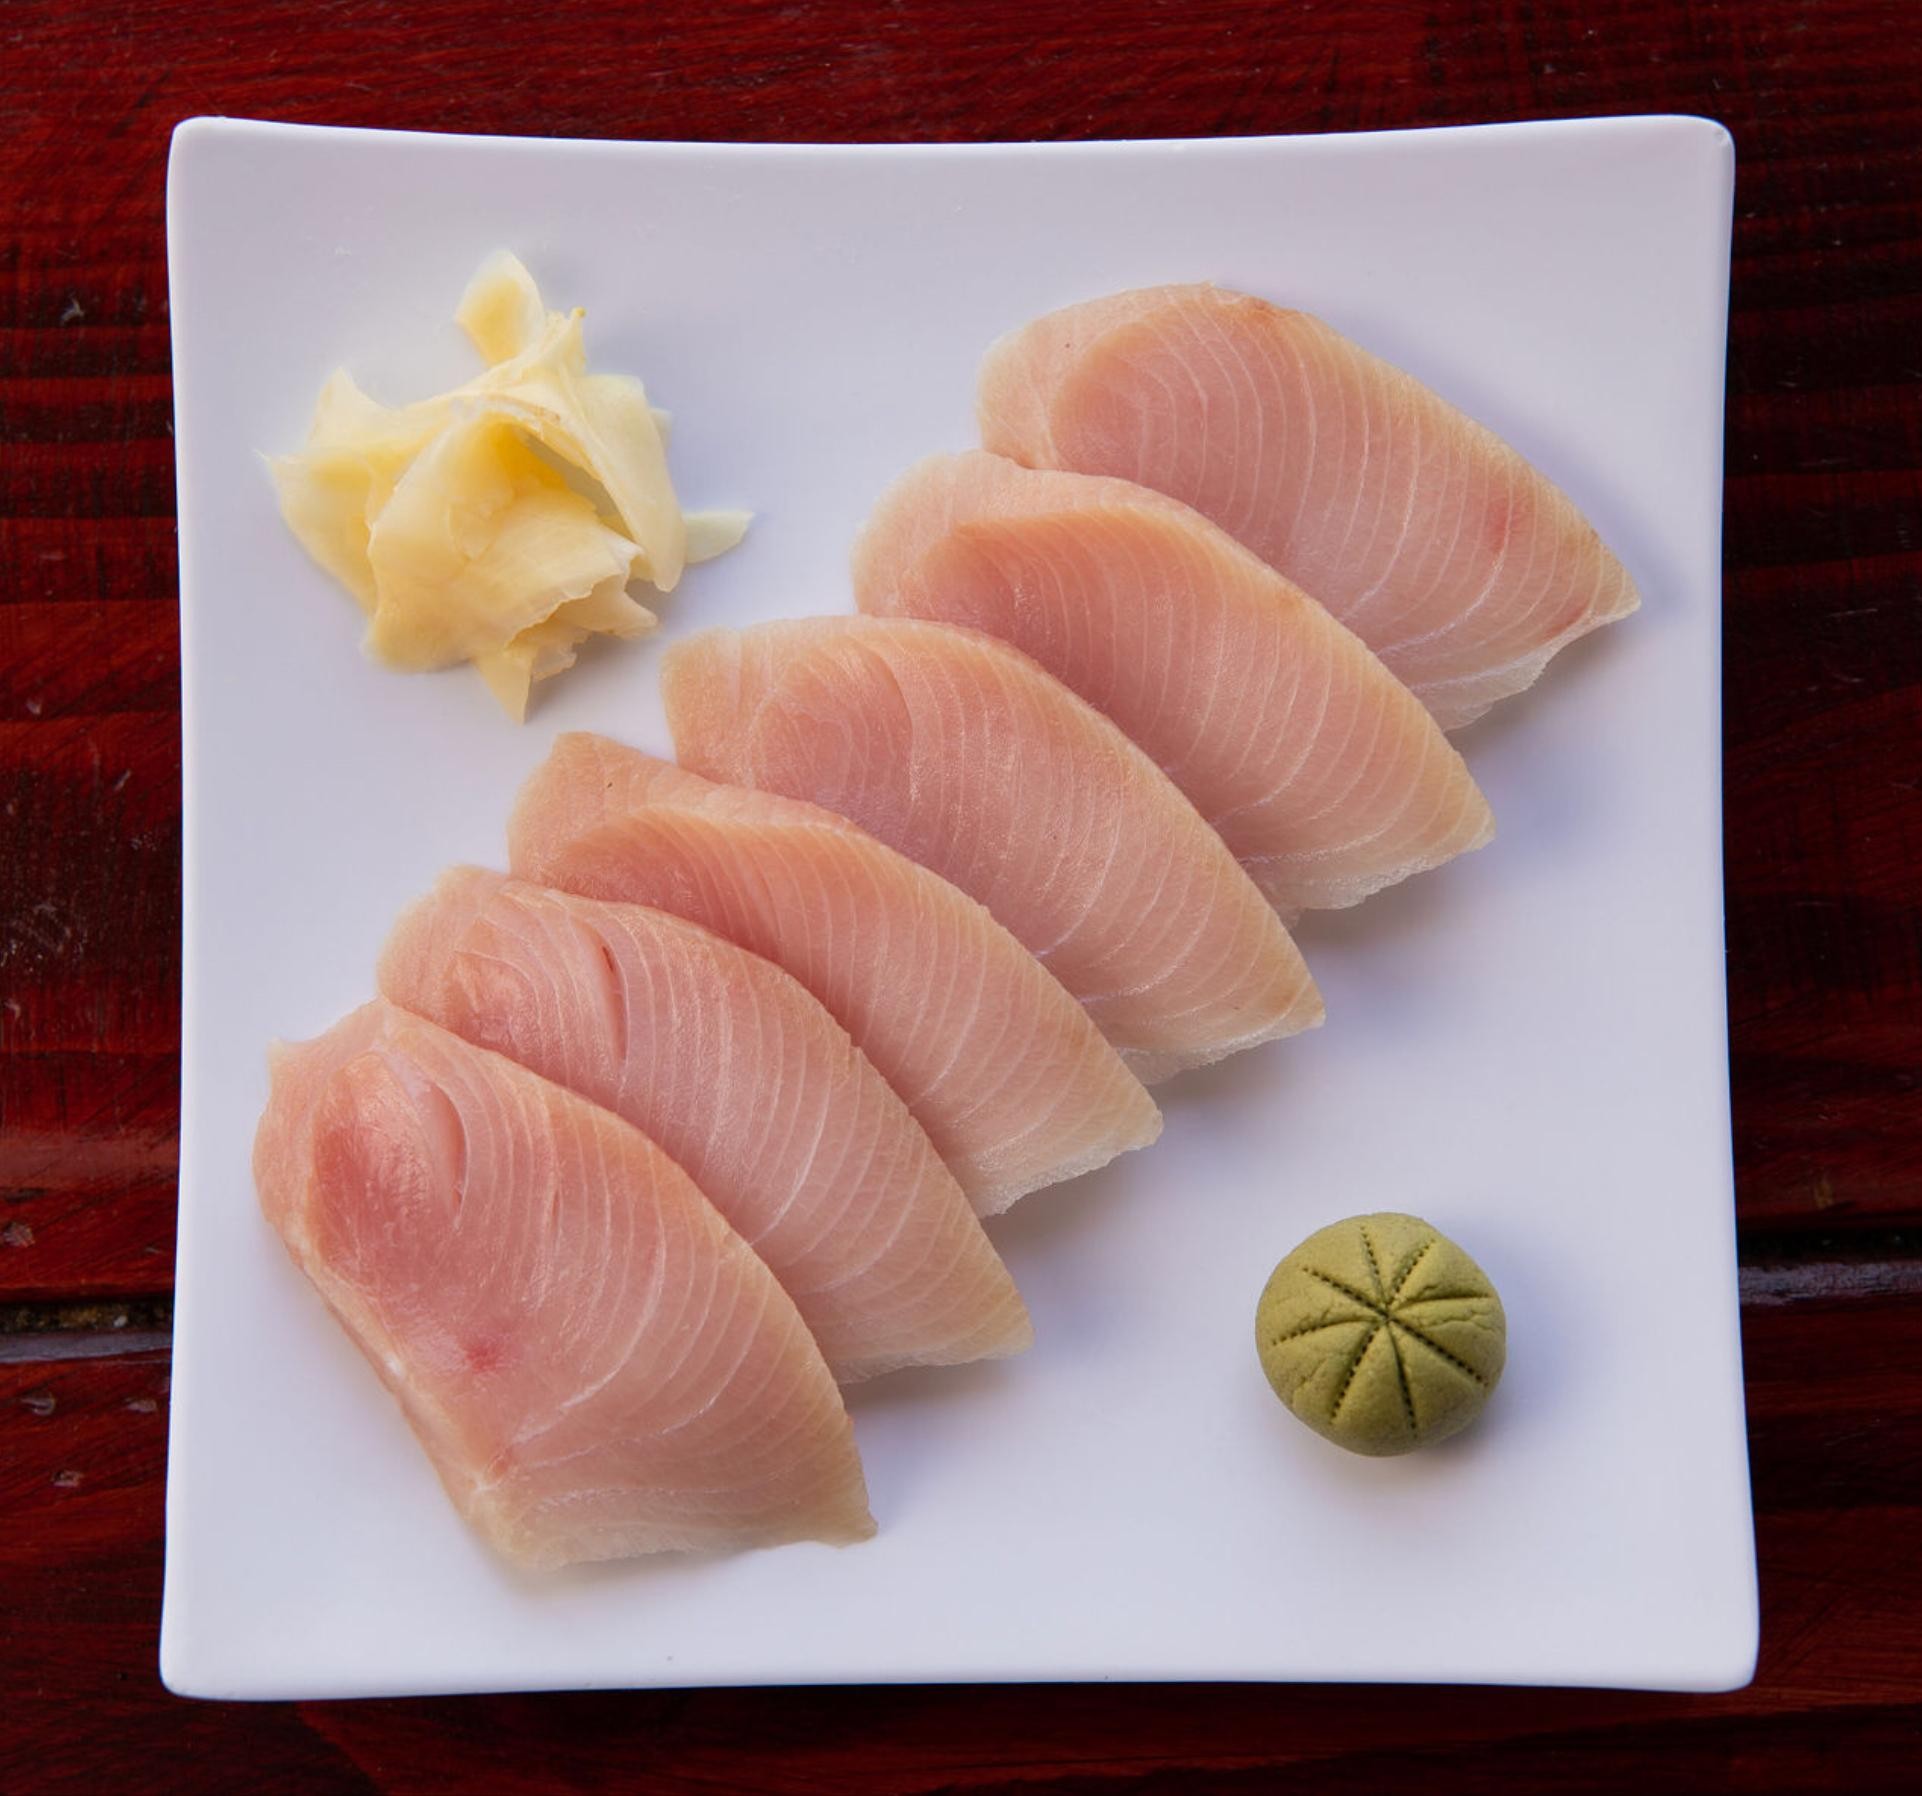 6pc. Yellowtail Sashimi